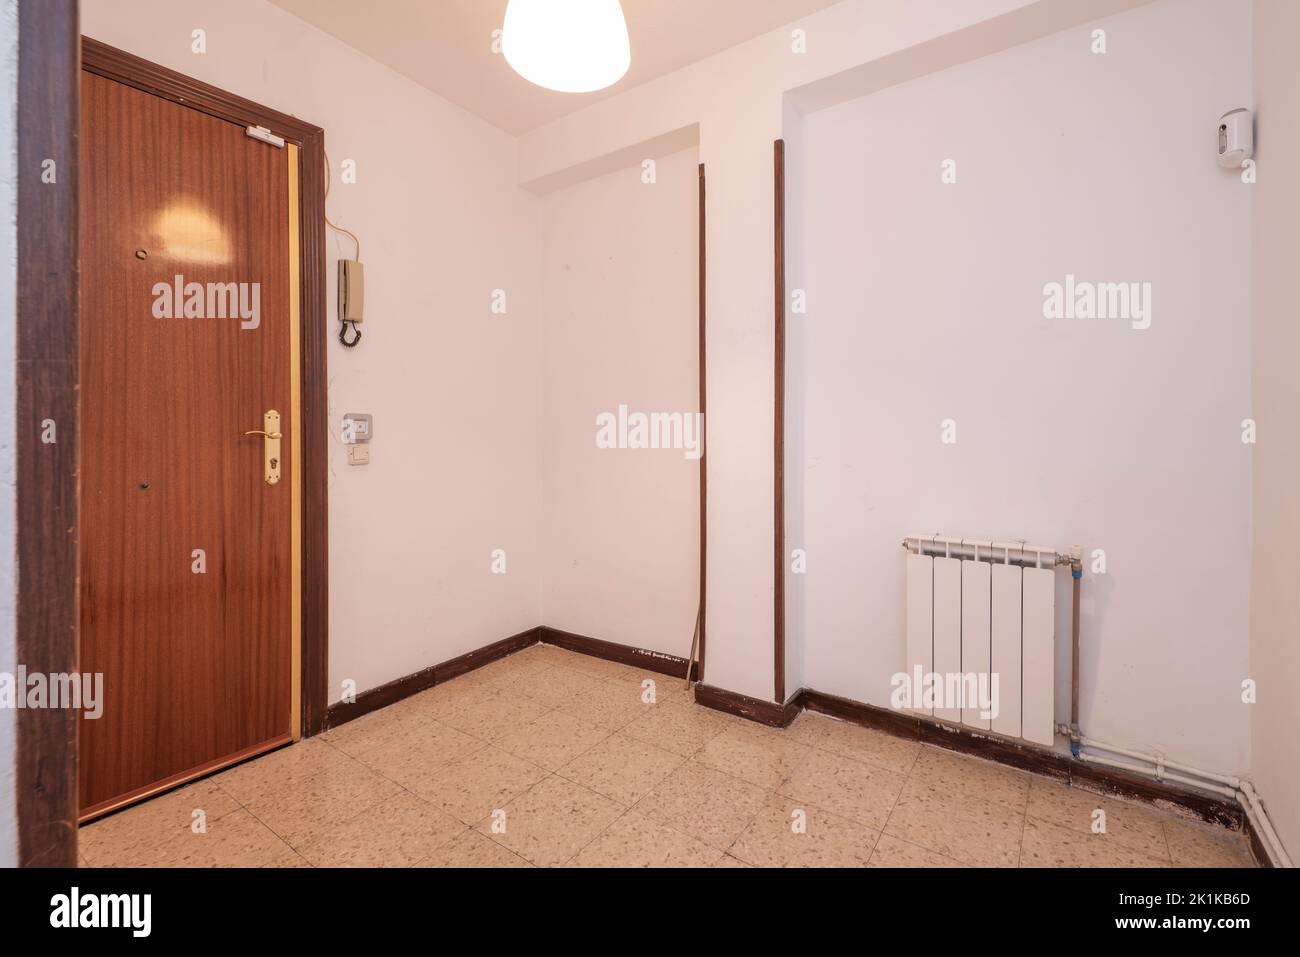 Couloir de distribution avec planchers en terrazzo brun clair, charpente en bois sur les portes et radiateur en aluminium blanc Banque D'Images